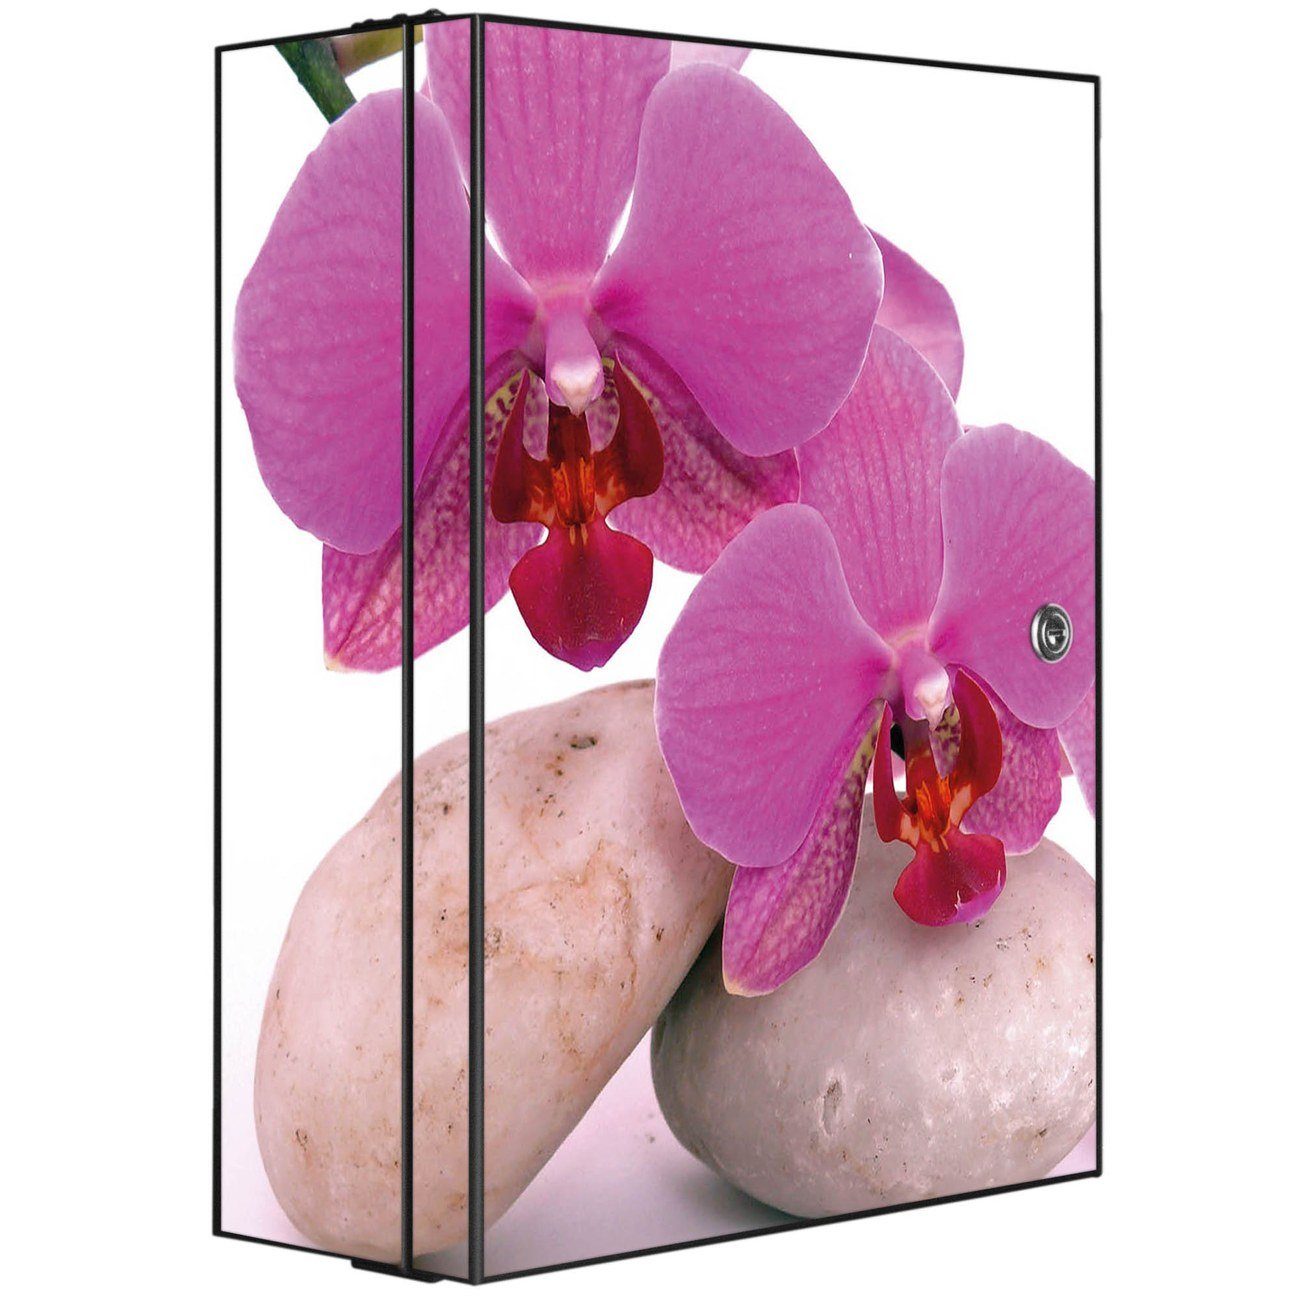 x 35 Stahl kleine (abschließbar, banjado 2 Medizinschrank 46 x 3 15cm Fächer) große Orchidee und schwarz